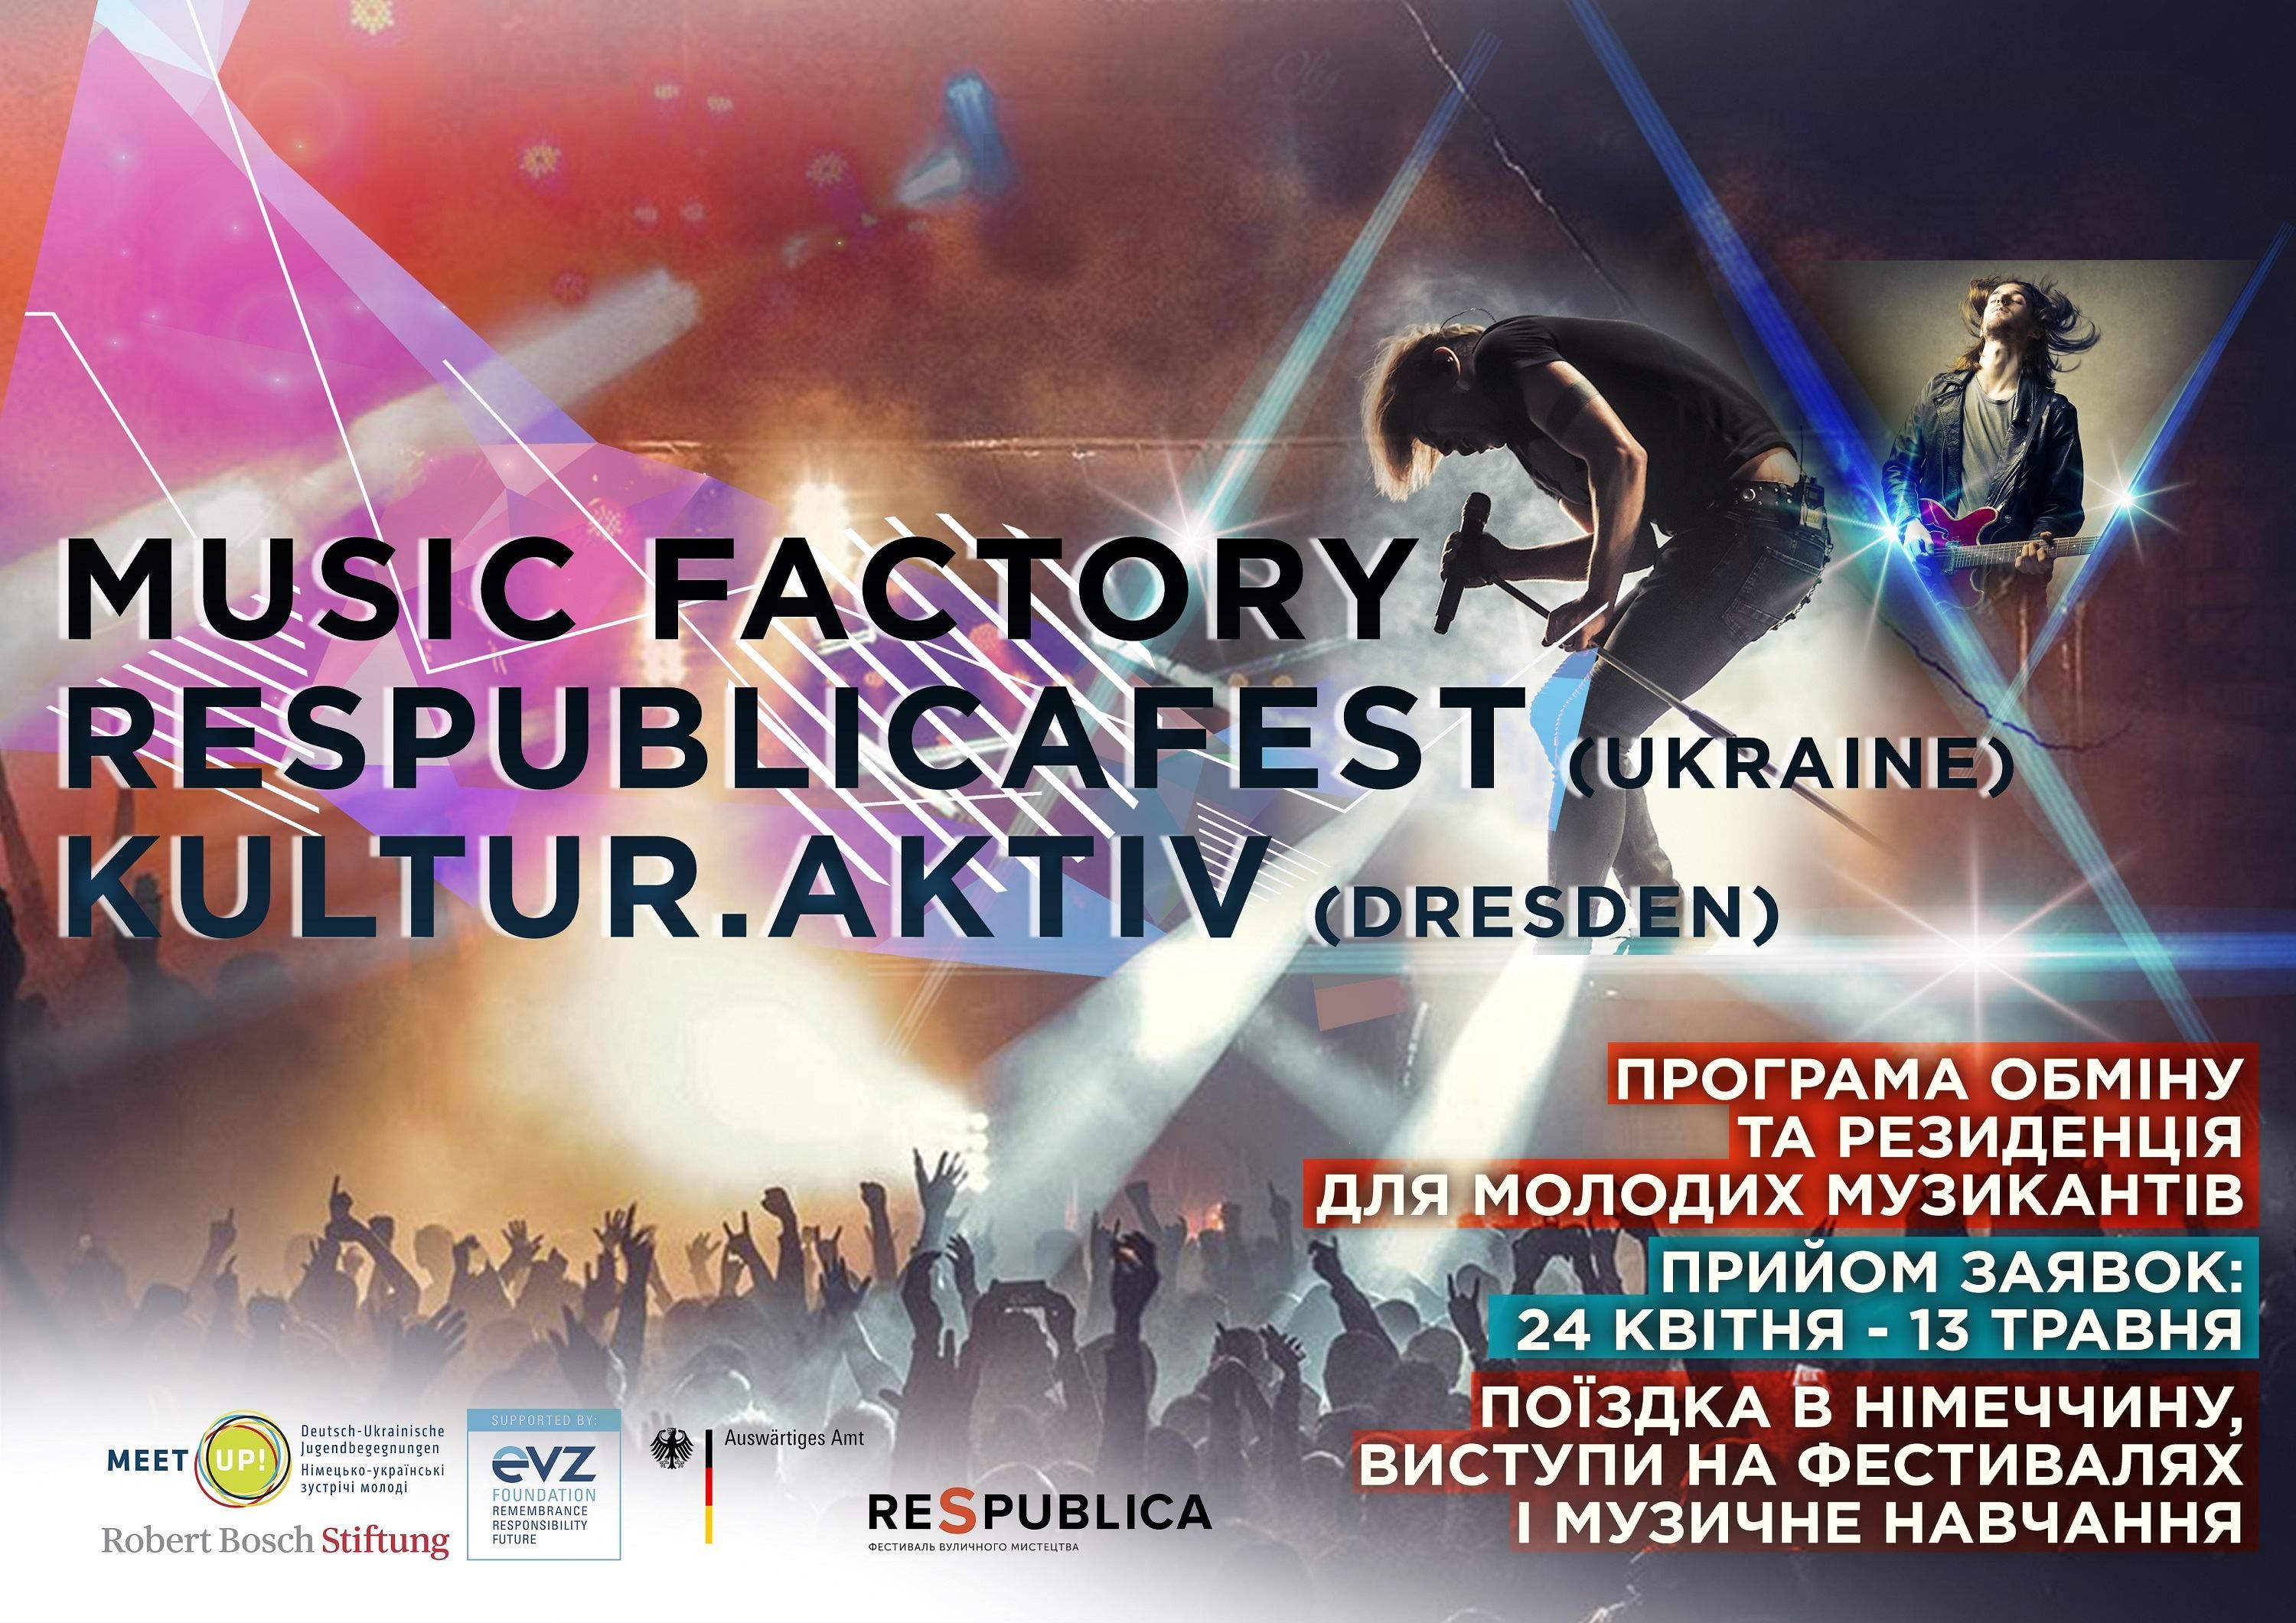 Шанс для українських музикантів: RespublicaFEST запускає міжнародну програму обміну